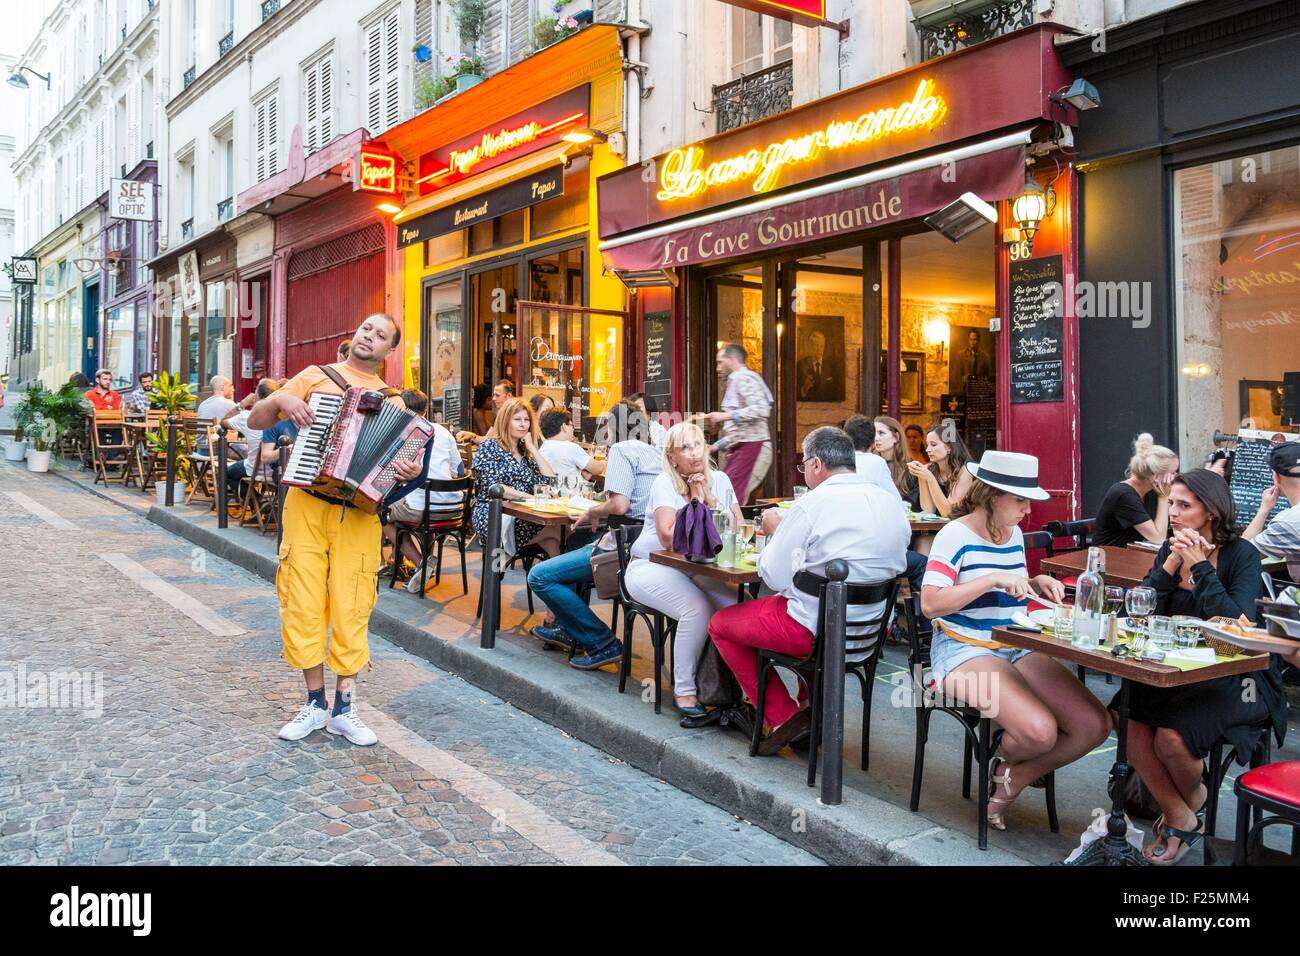 France, Paris, Montmartre, La Cave Gourmande restaurant Banque D'Images